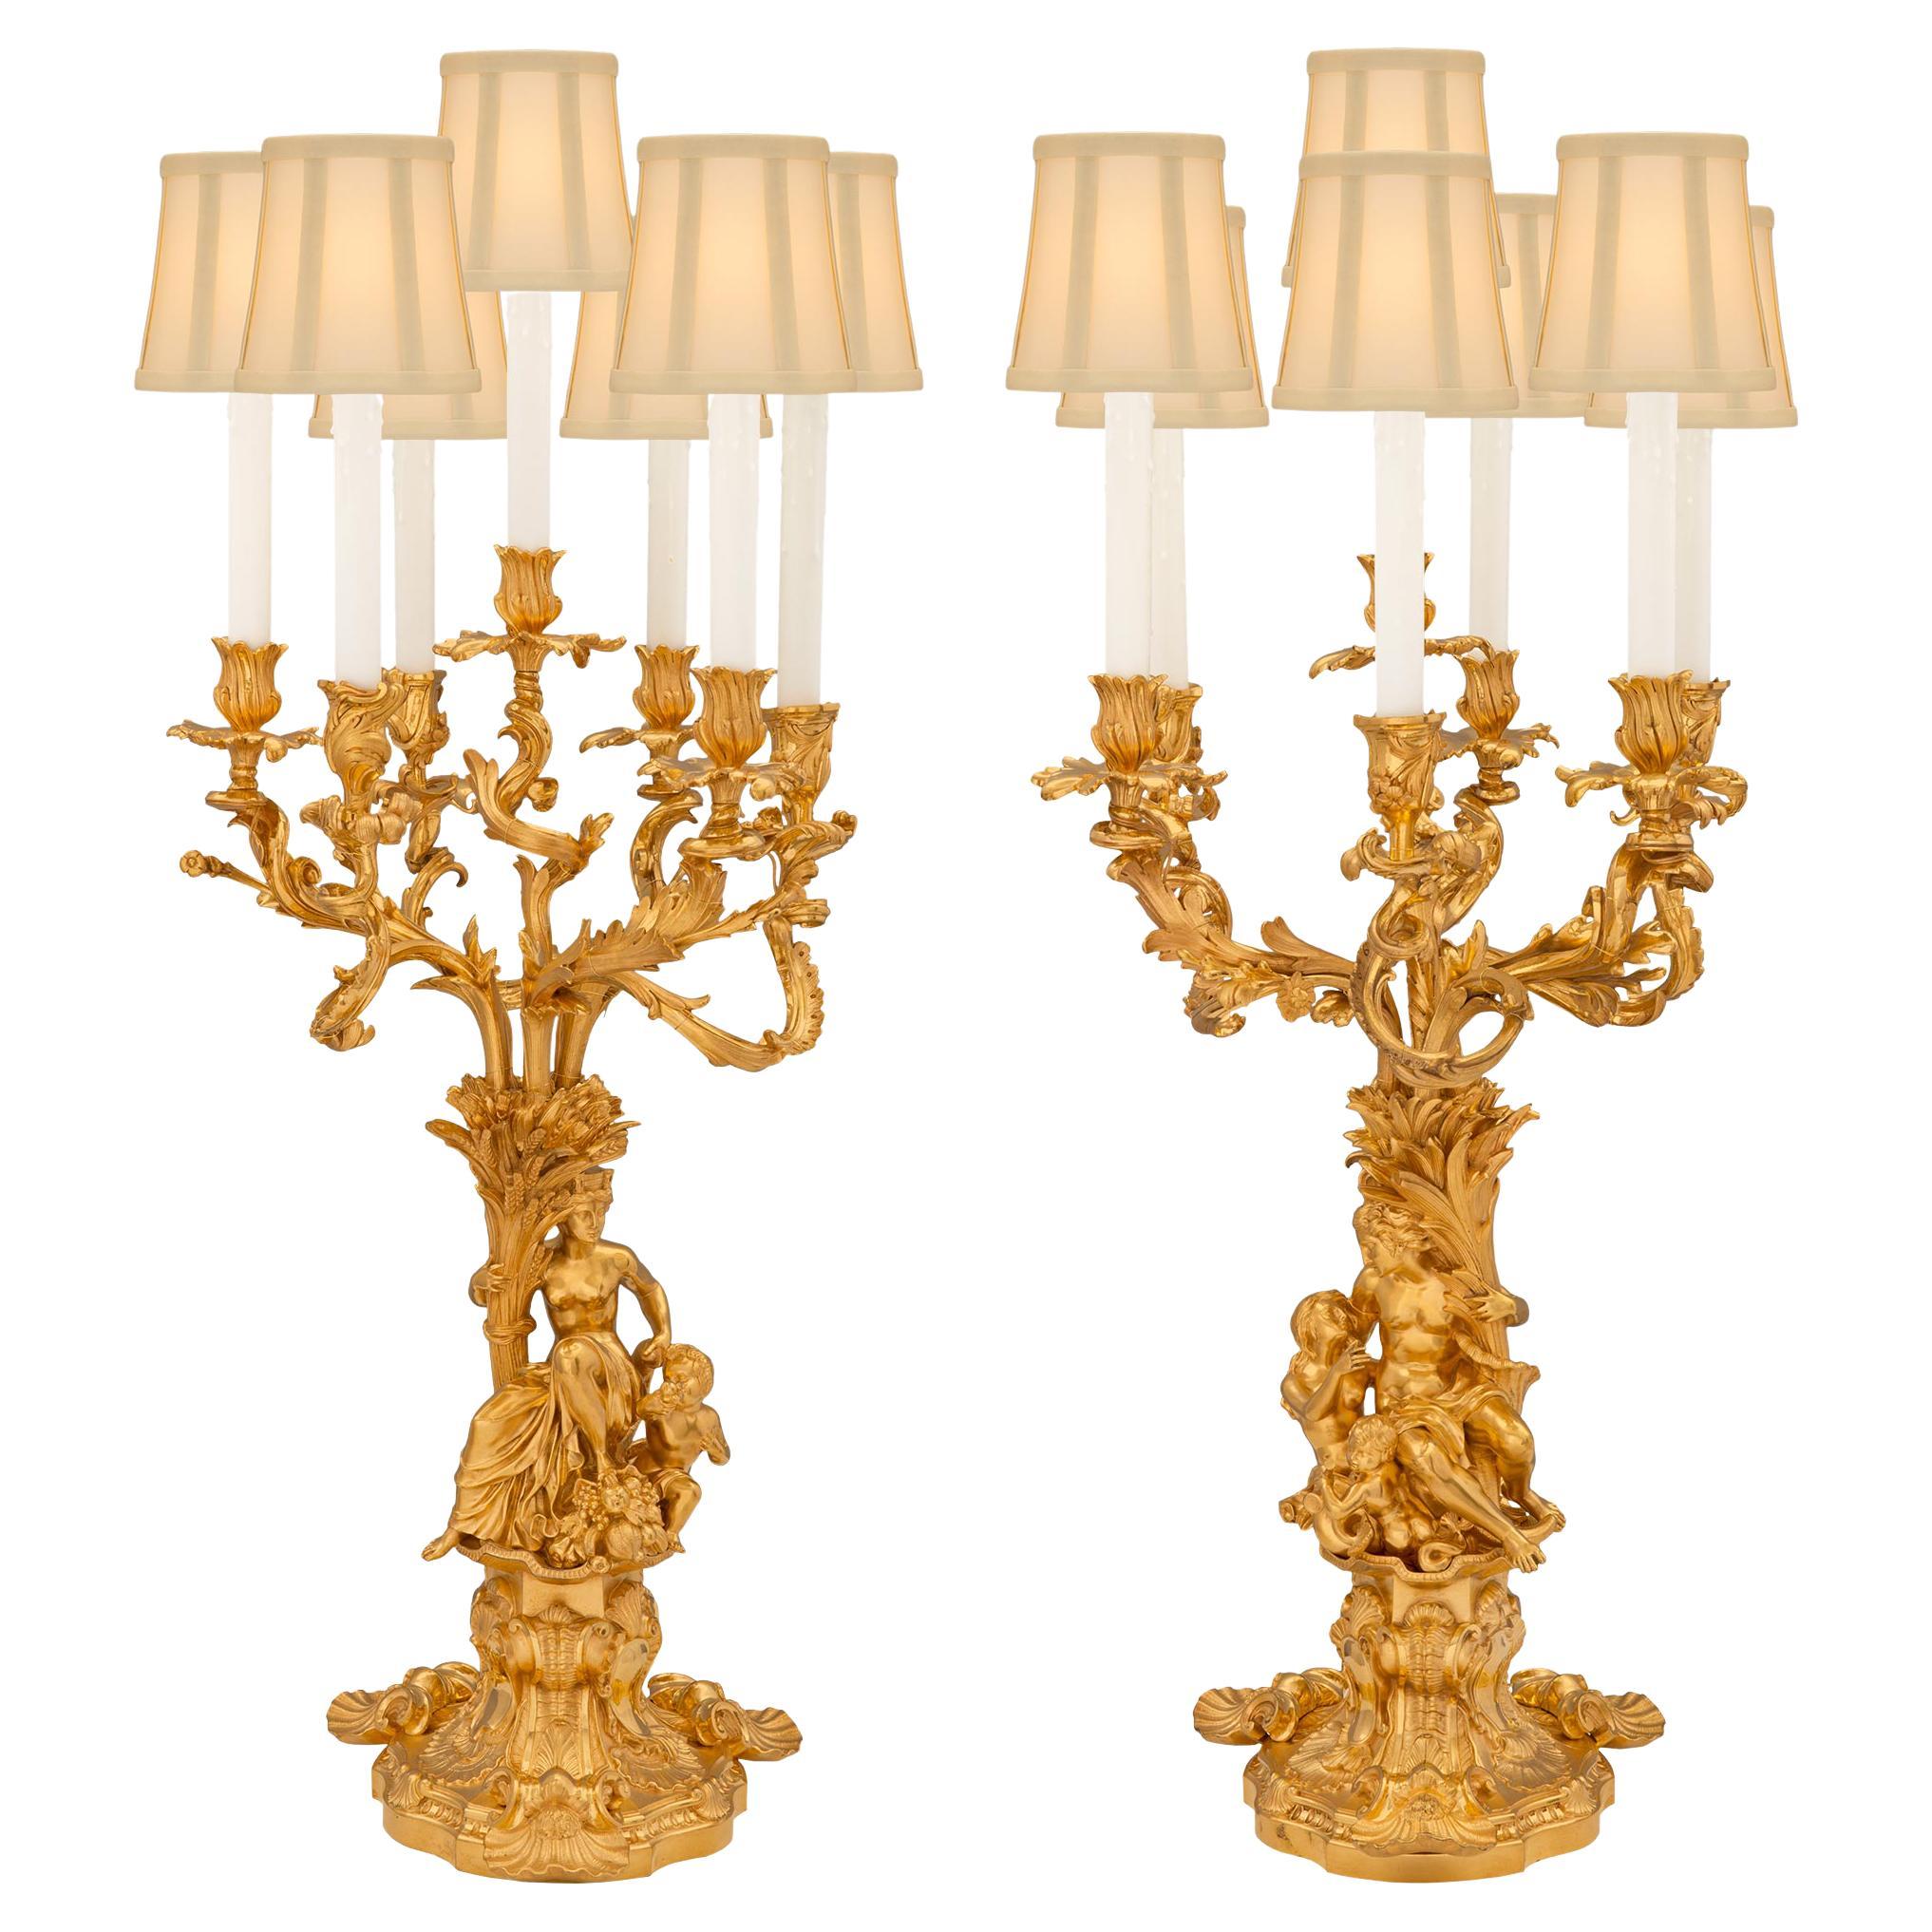 Paire de grandes lampes candélabres en bronze doré de style Louis XV du XIXe siècle à grande échelle